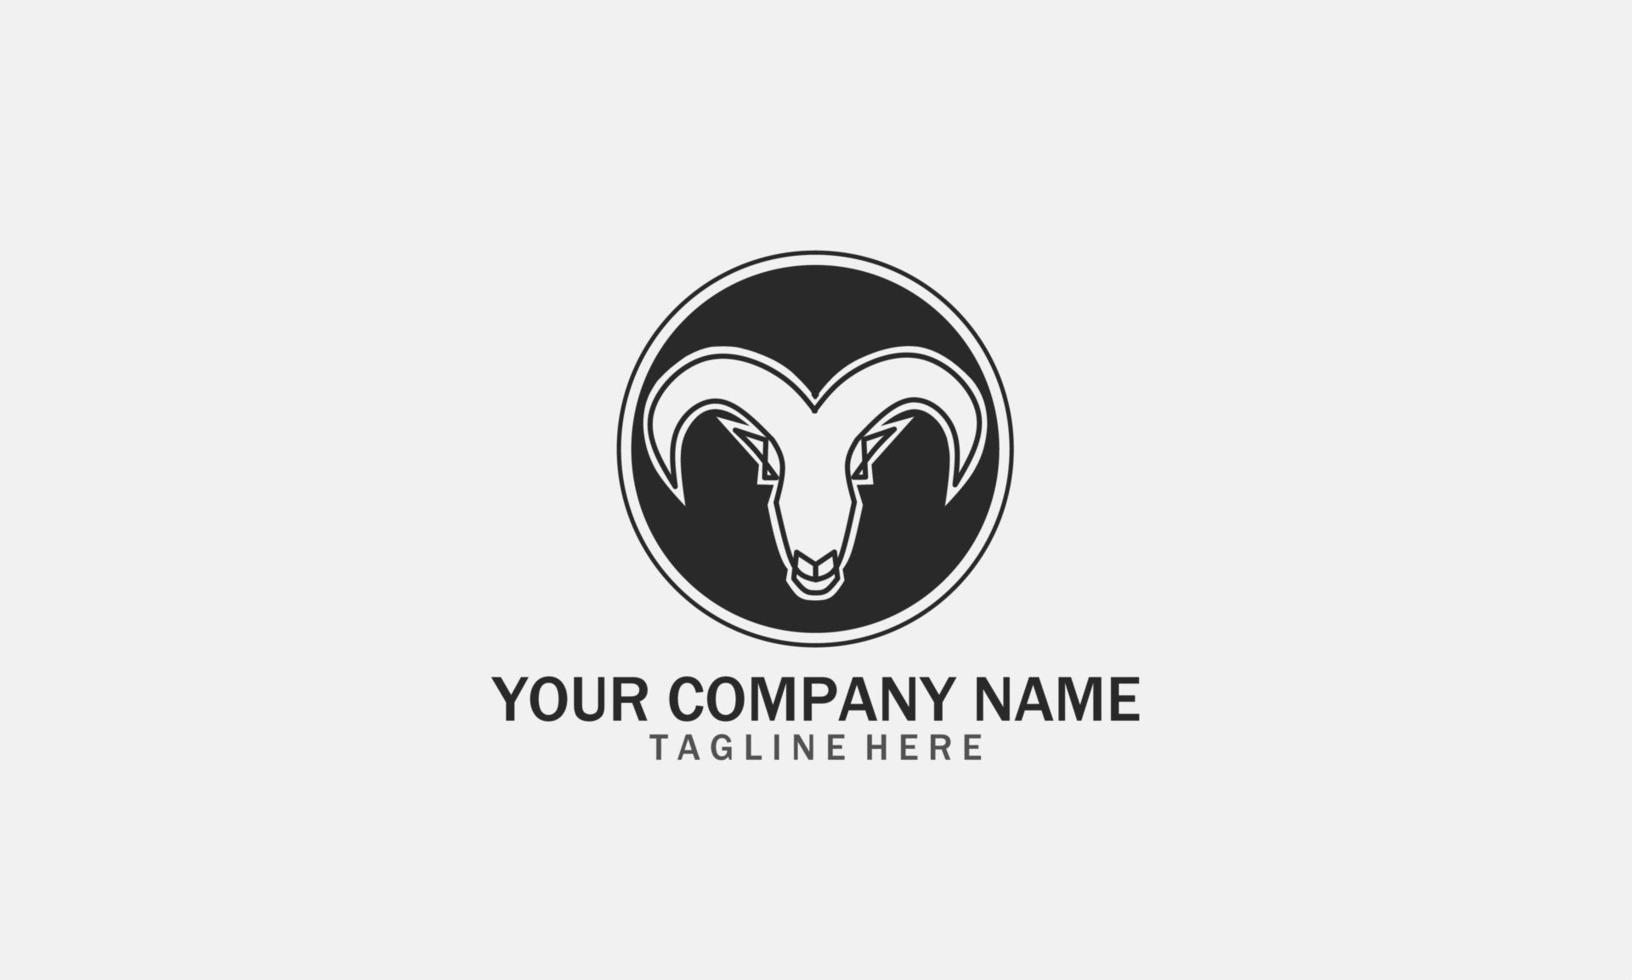 Sheep logo design. Vector Icon Of A Ram With Long Horns. Modern Sheep Logo Template.